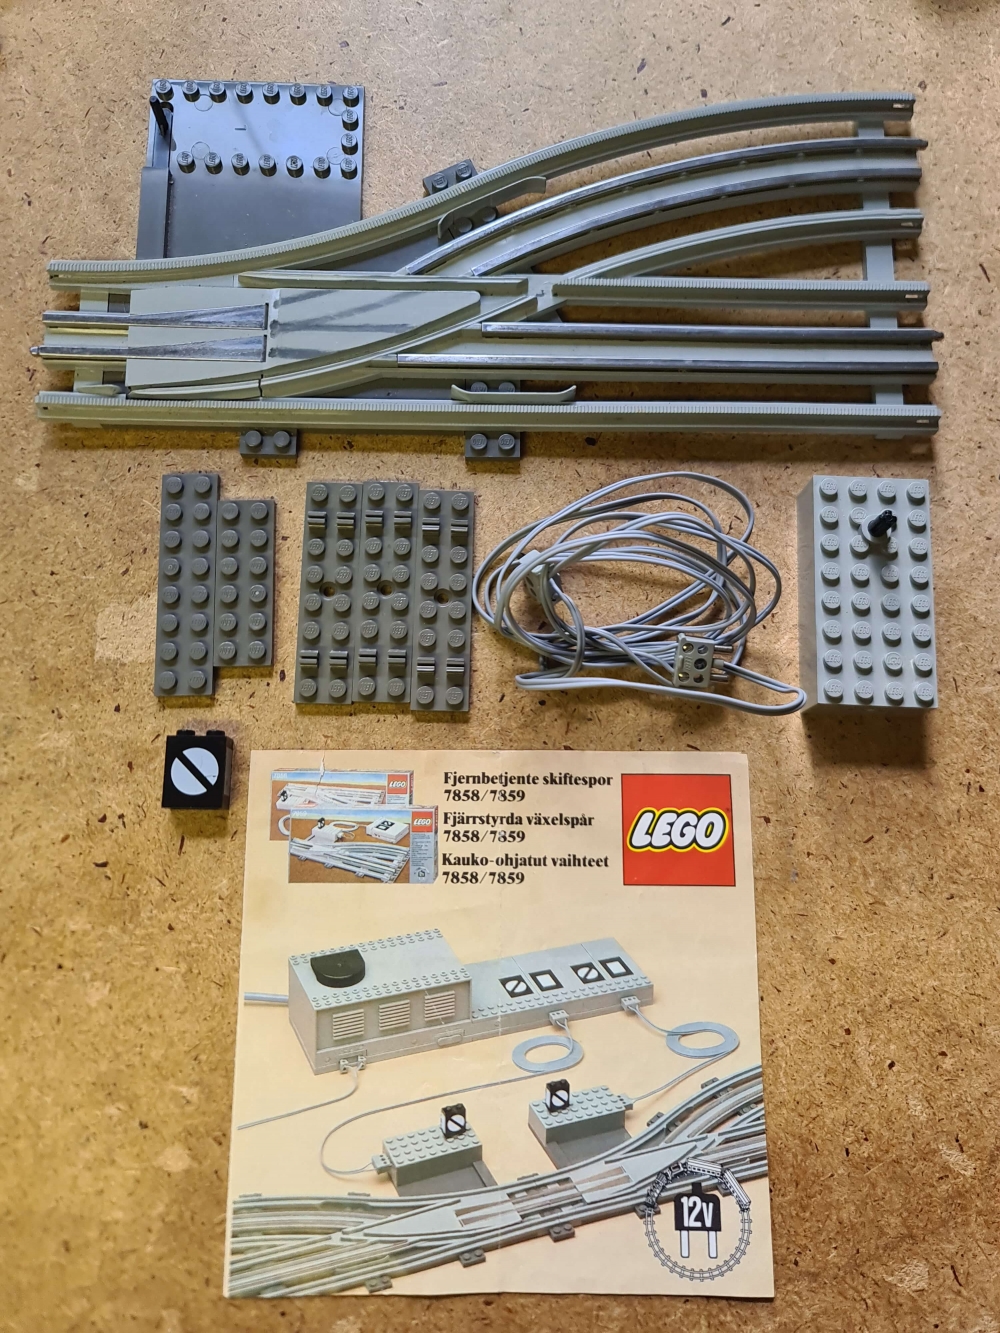 Sett 7859 fra Lego Train : 12V serien
Meget pent. Komplett med manual.
Testet og fungerer.
